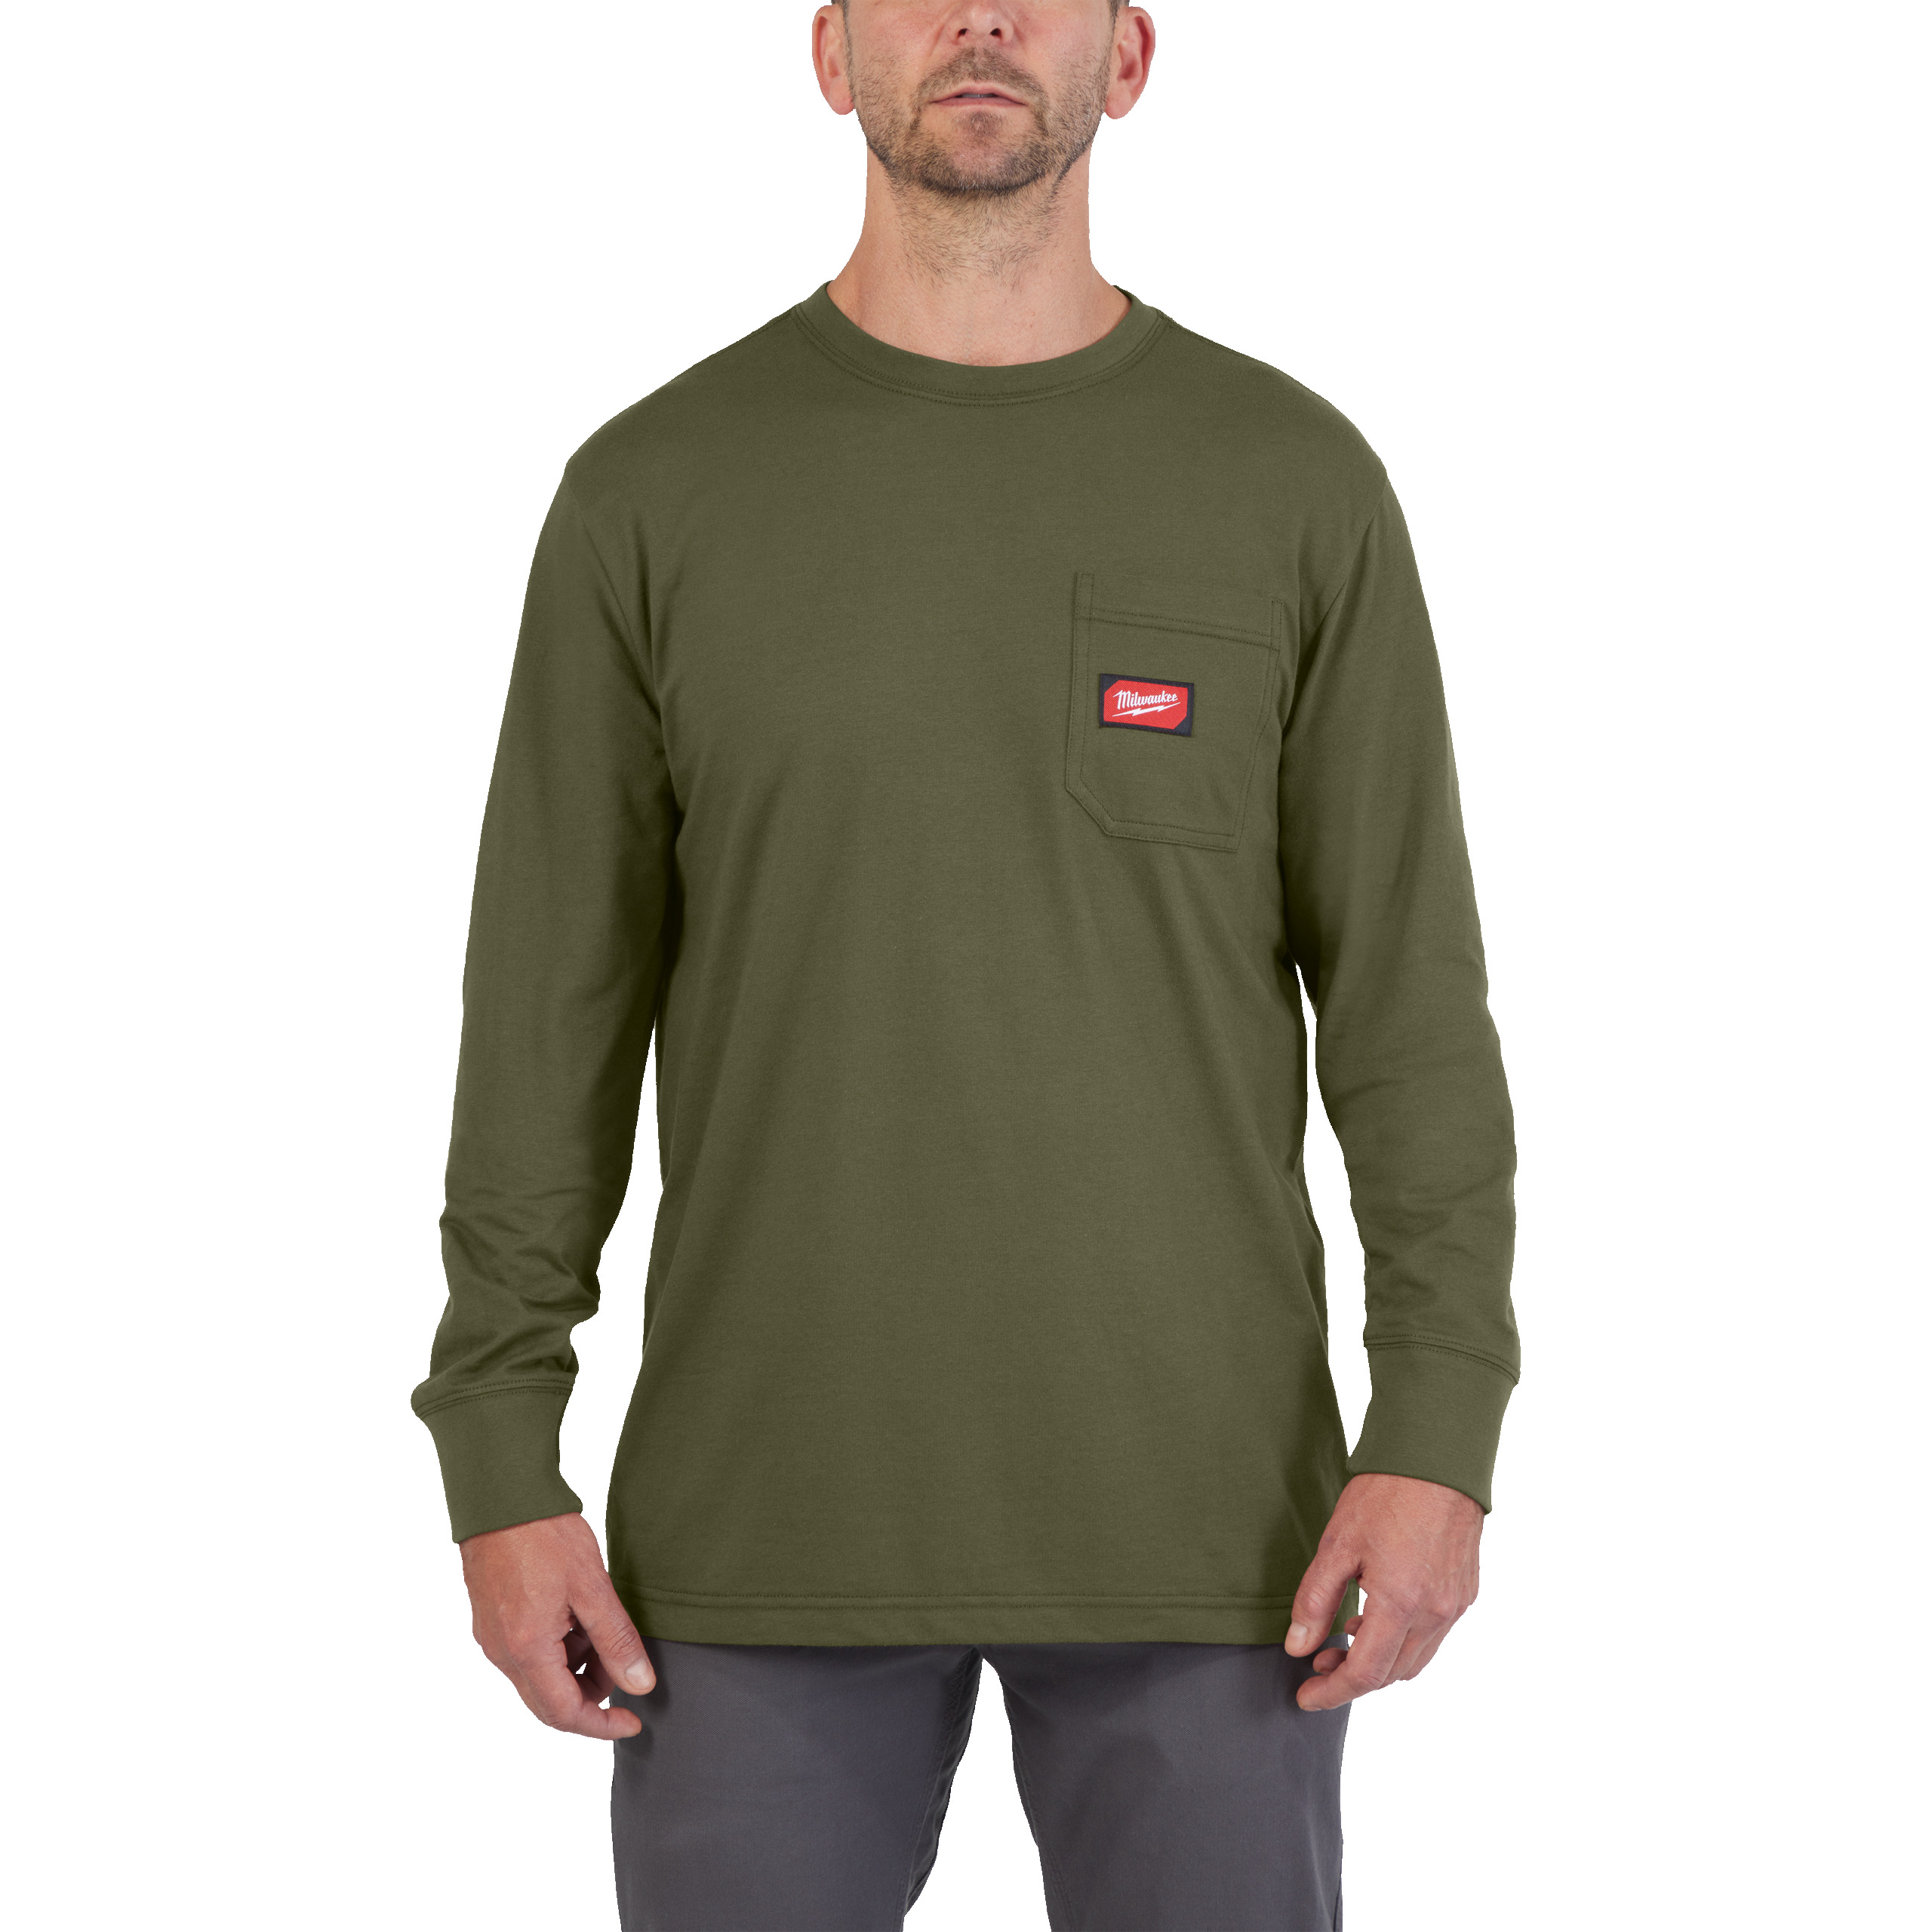 Arbeits-Langarm-Shirt grün mit UV-Schutz (WTLSGN-M)